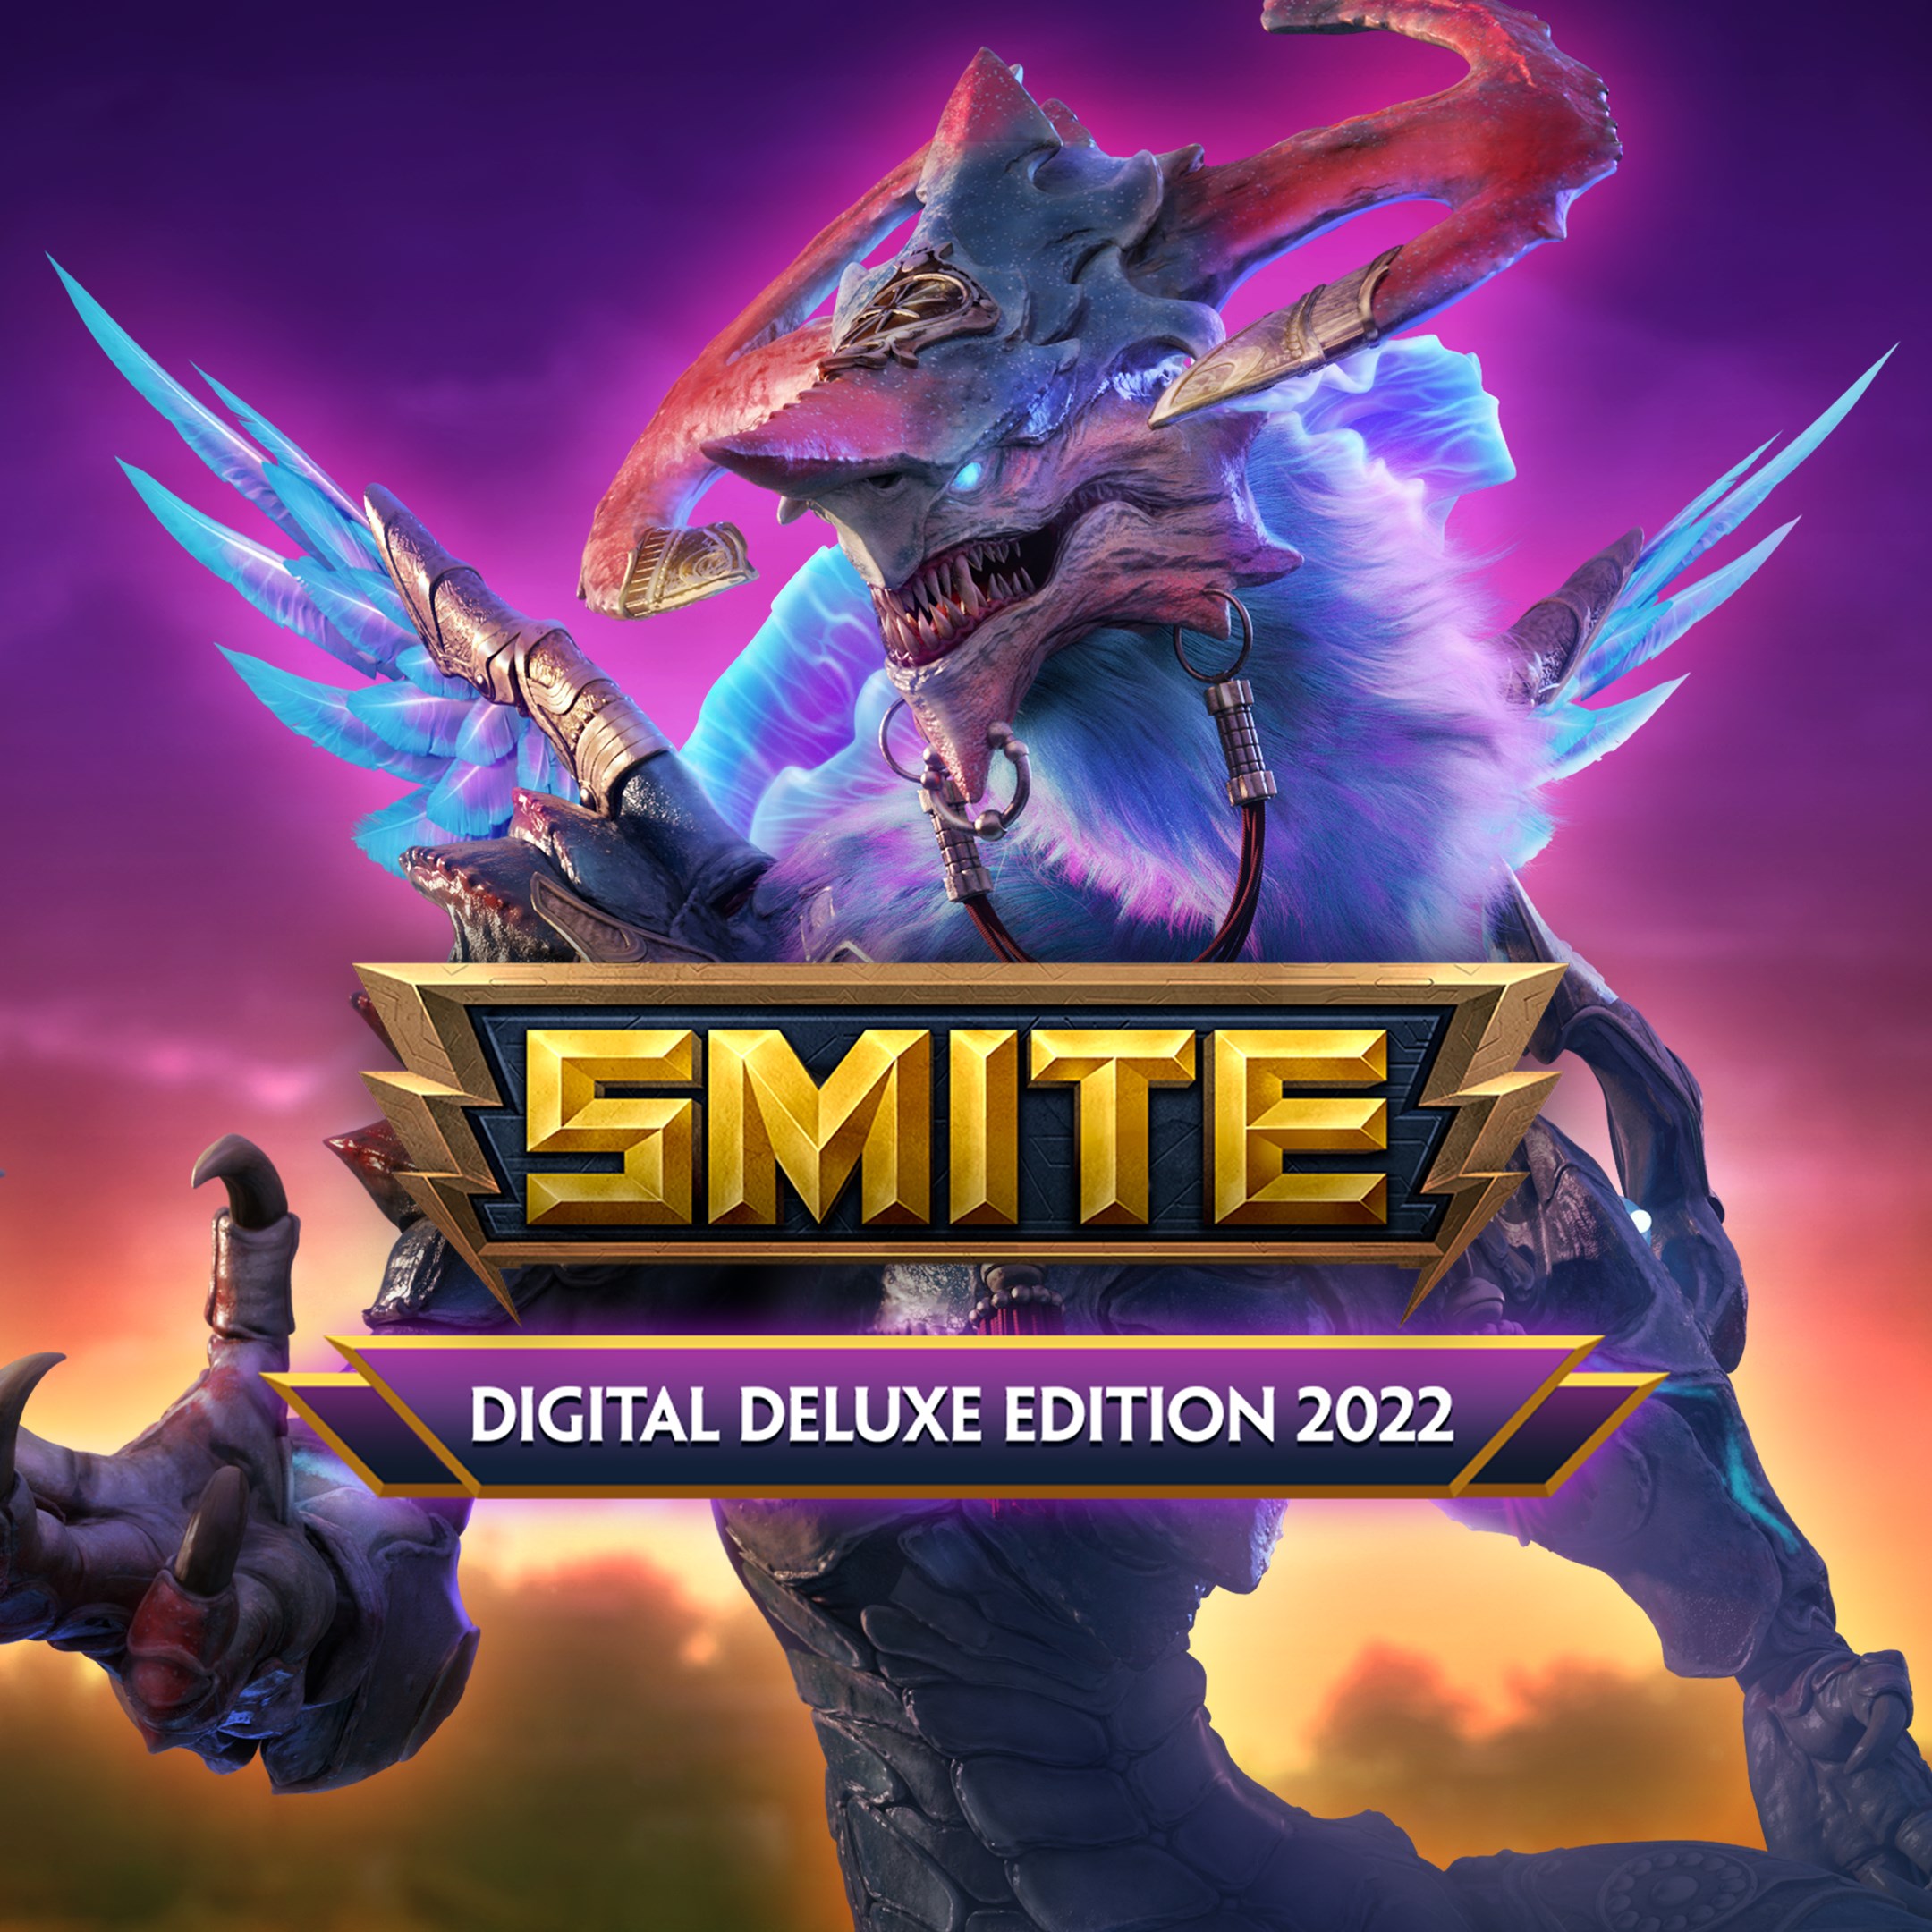 L'édition Digital Deluxe 2022 pour SMITE